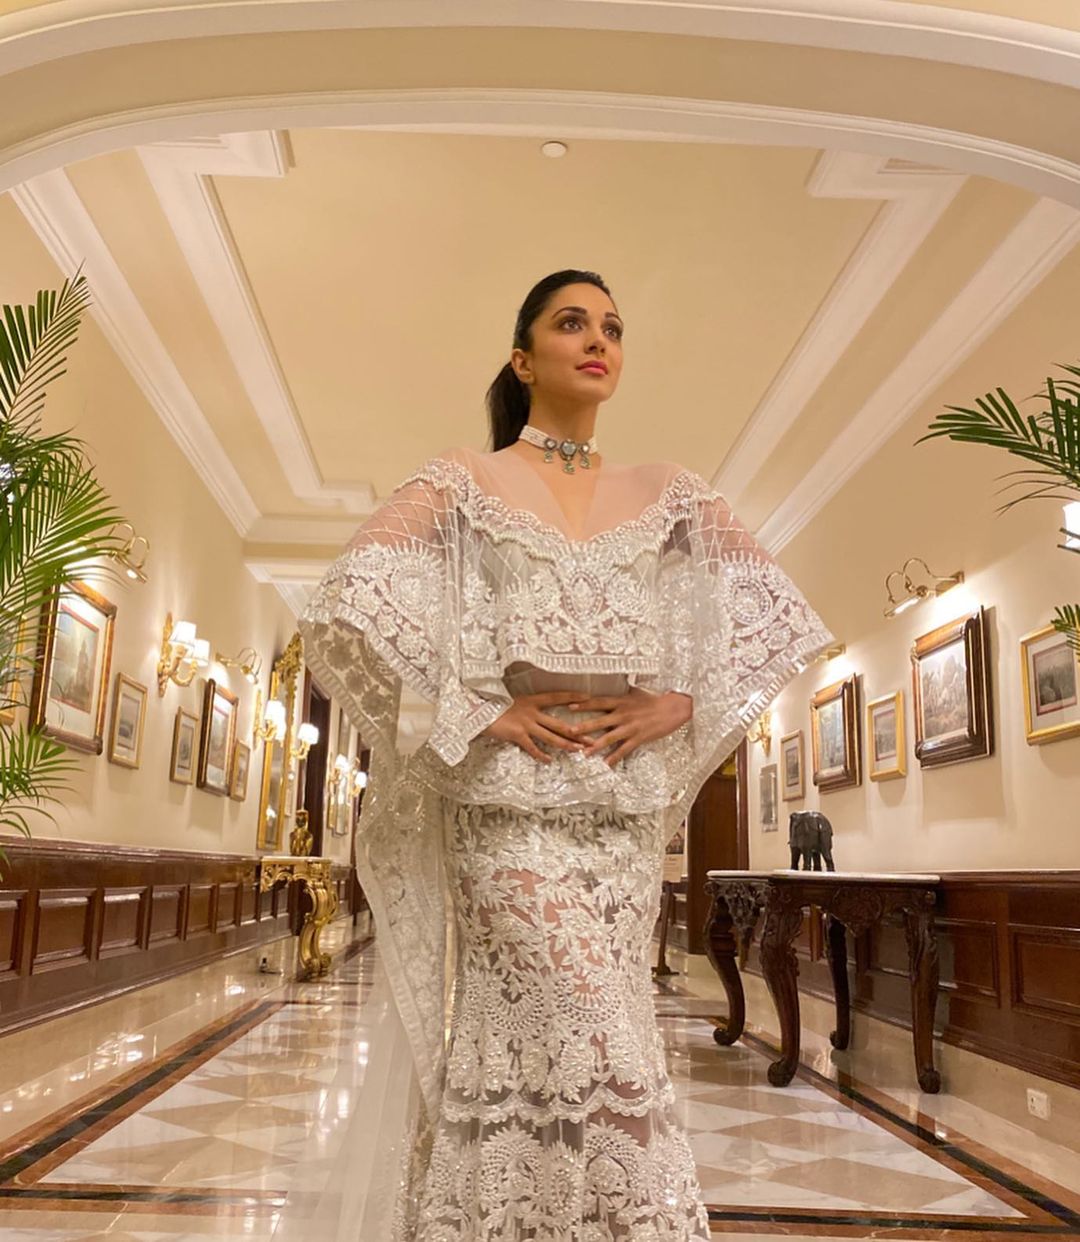 Kiara Advani looks stunning in the white embroidered ensemble.